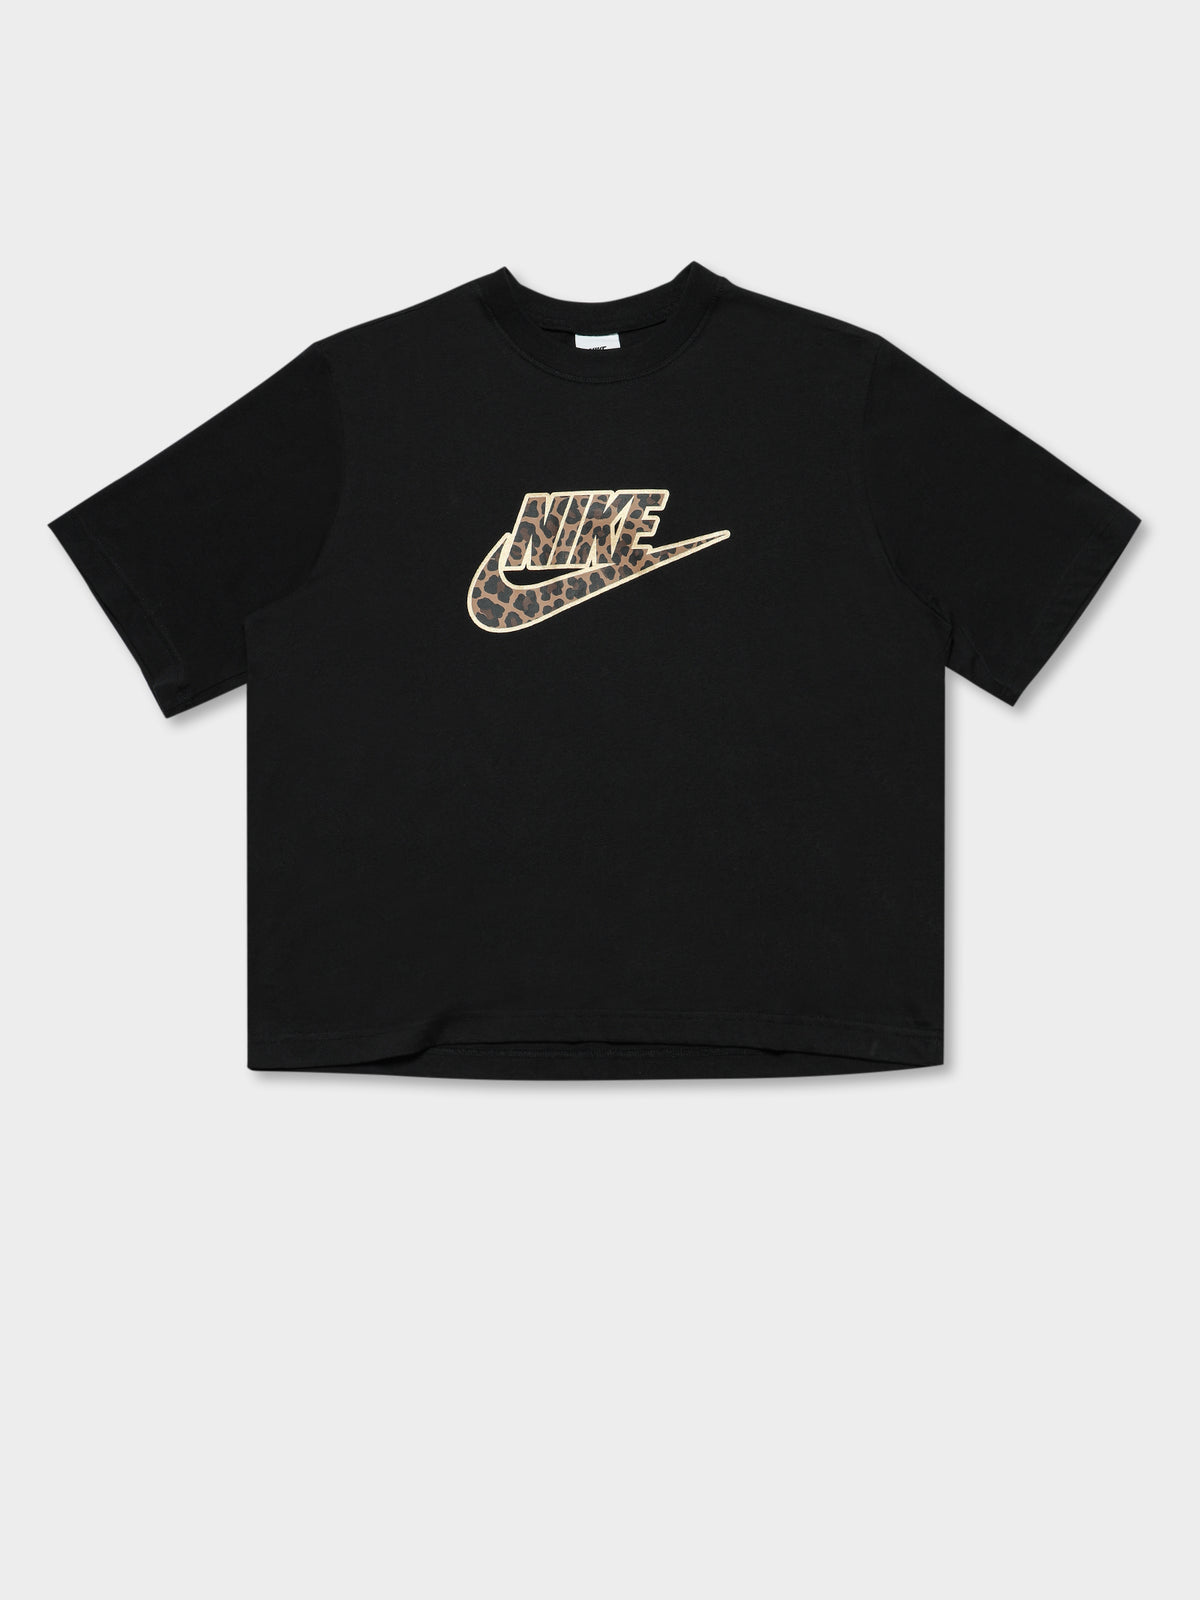 Sportswear T-Shirt in Boxy Leopard in Black &amp; Metallic Gold